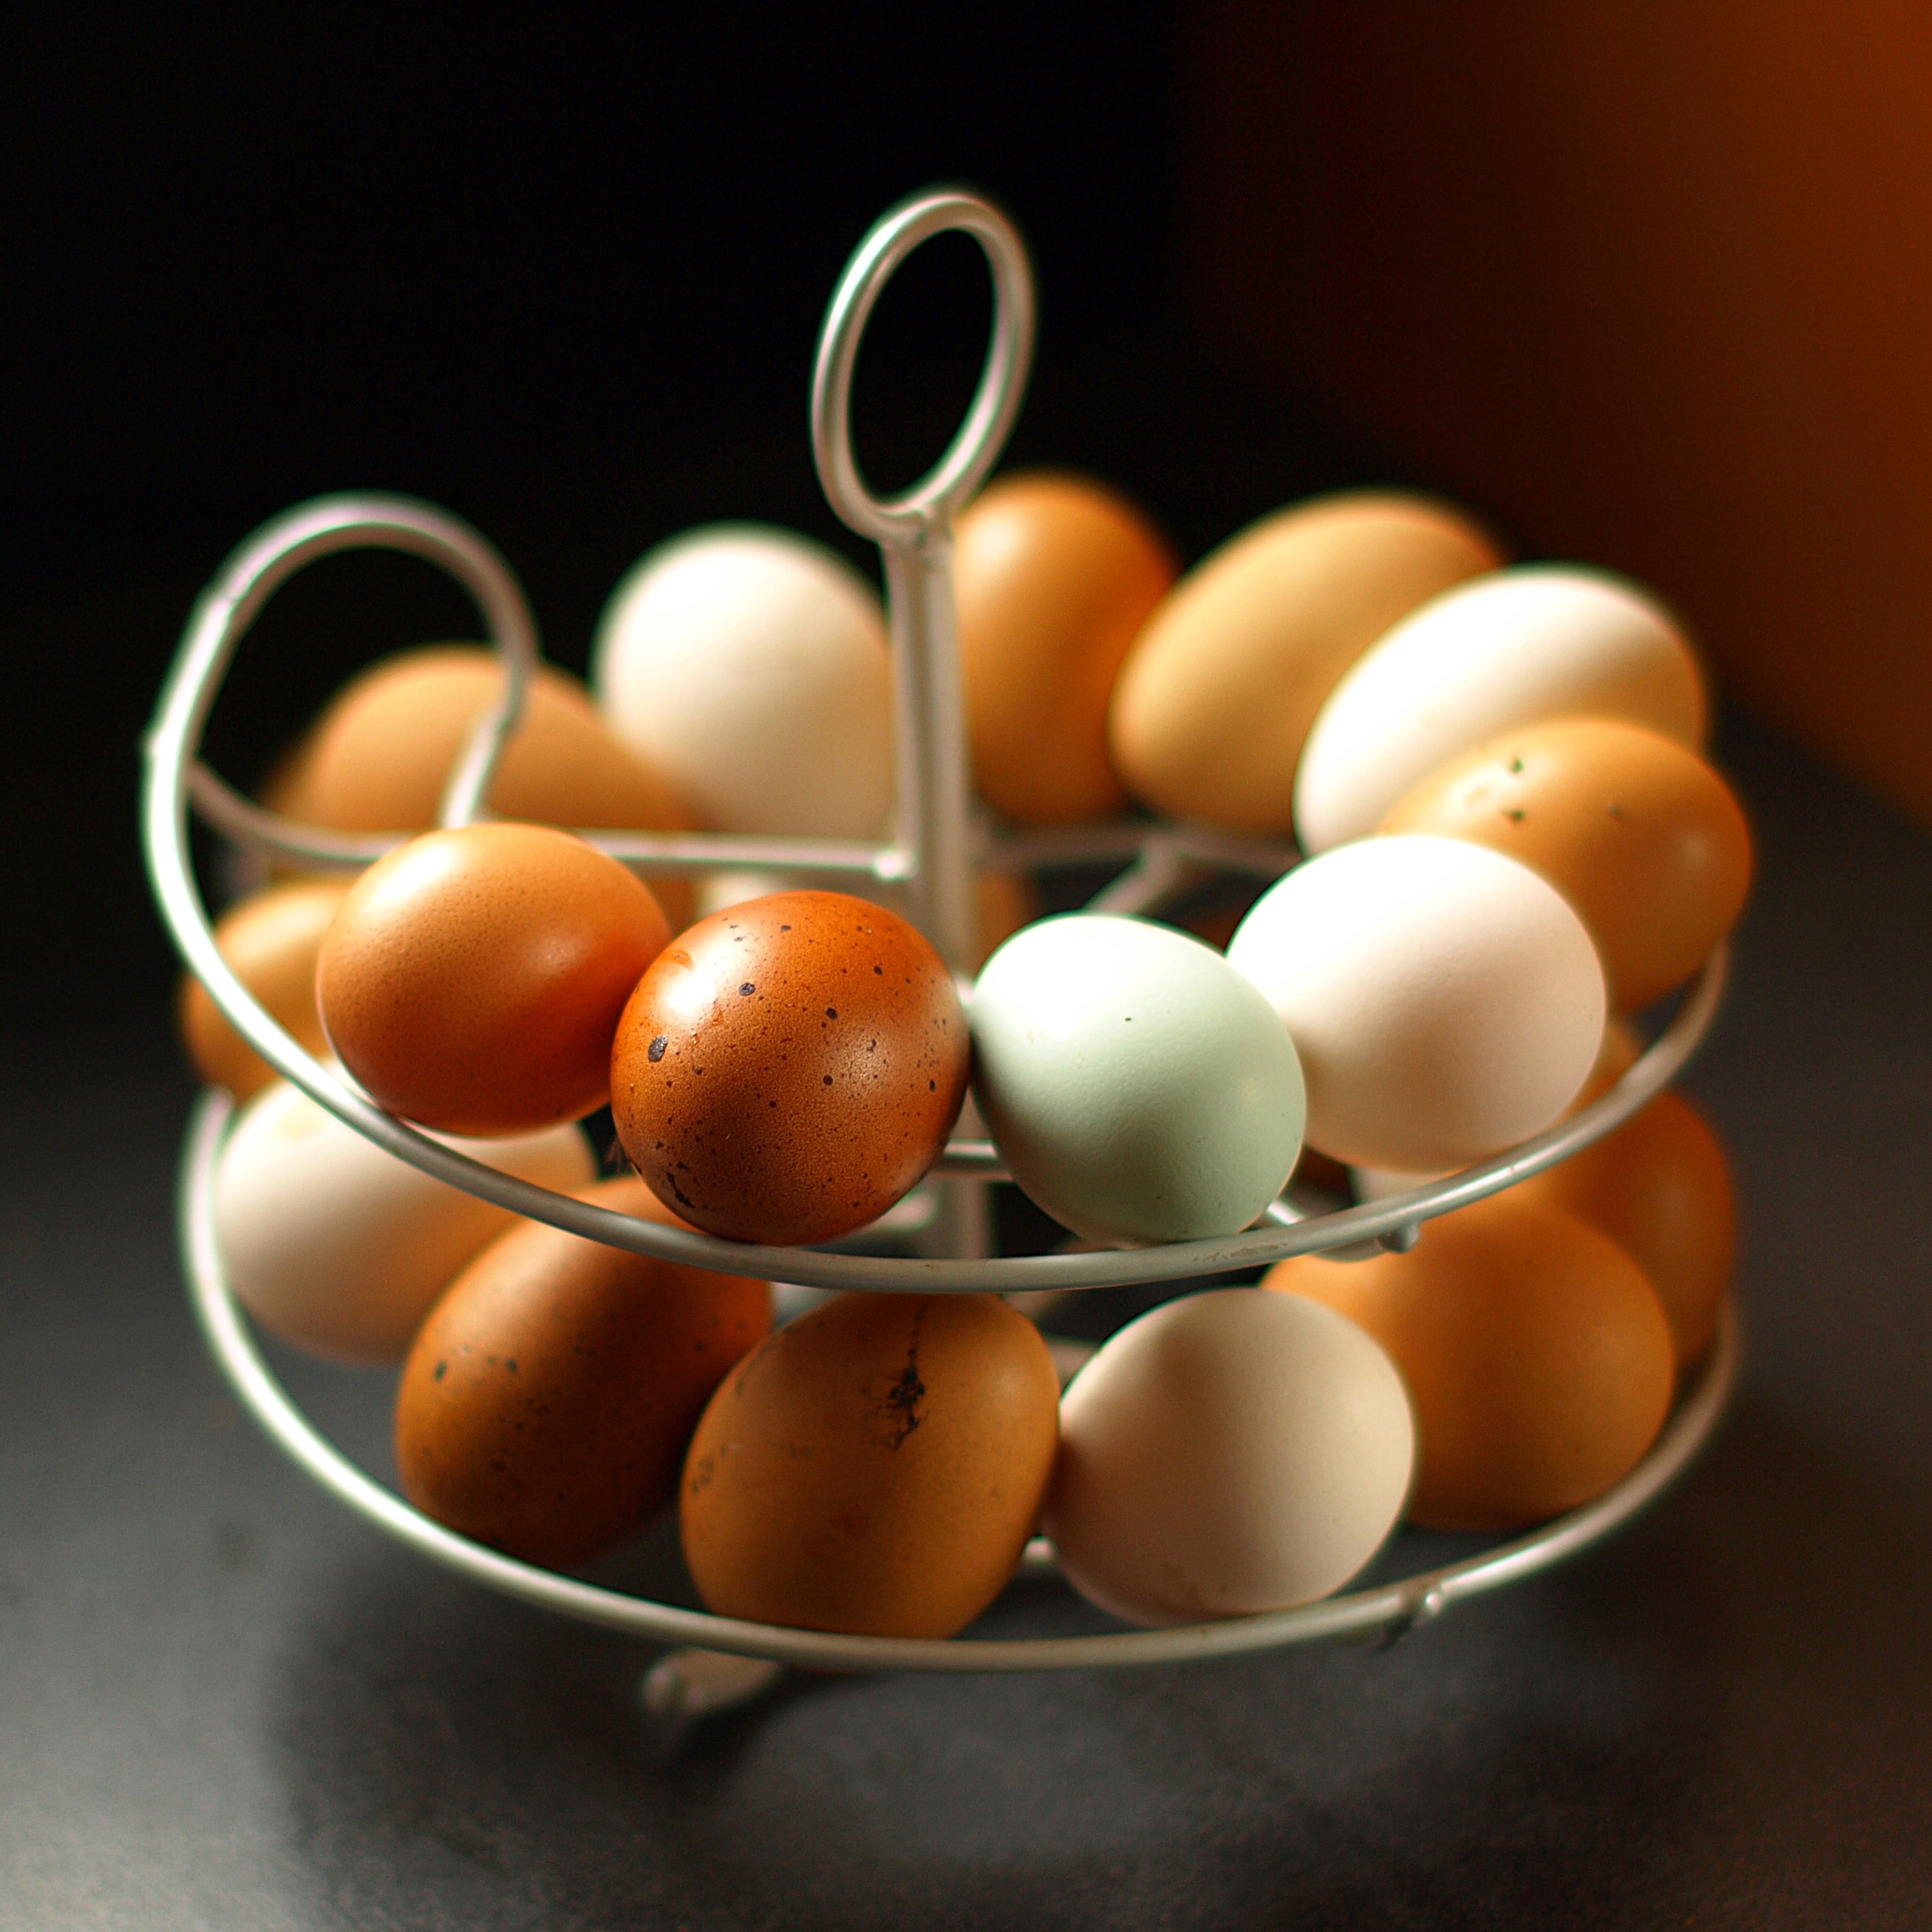 Die Eierspirale von Omlet erlaubt, die Eier nach Legezeitpunkt zu ordnen